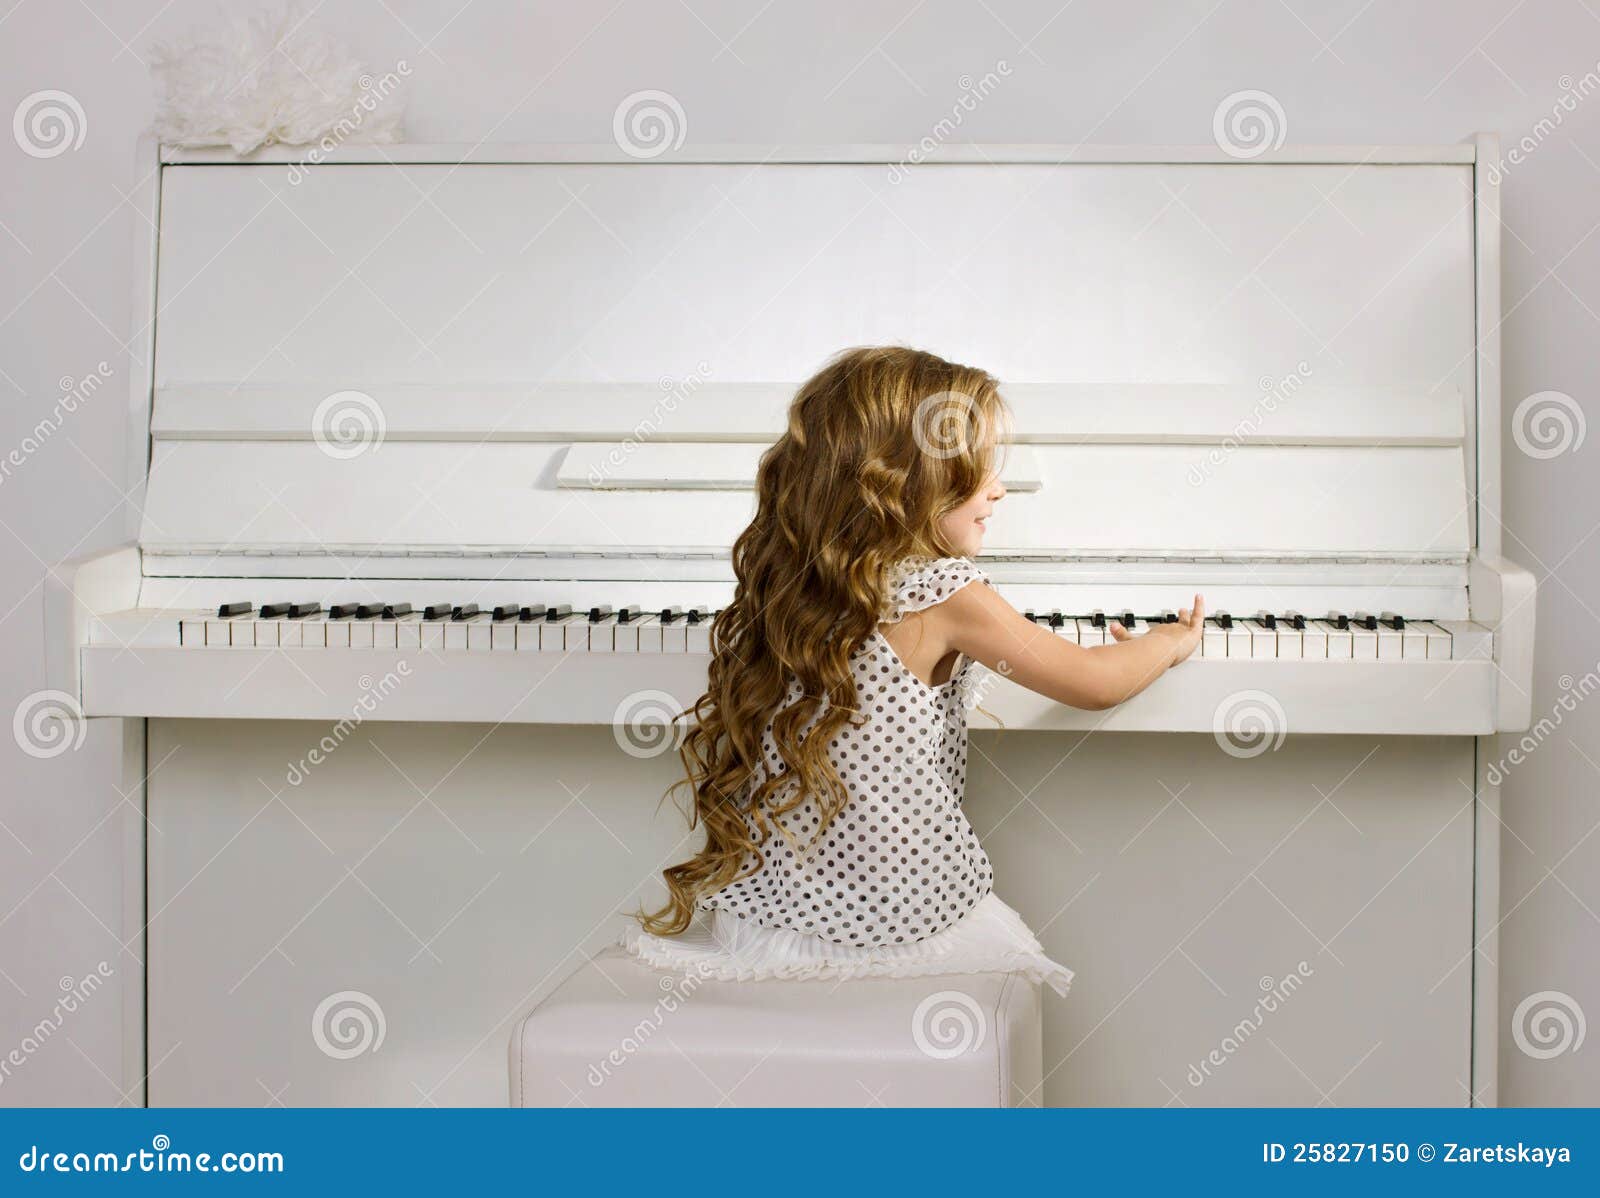 弹钢琴的美女桌面壁纸 - 25H.NET壁纸库